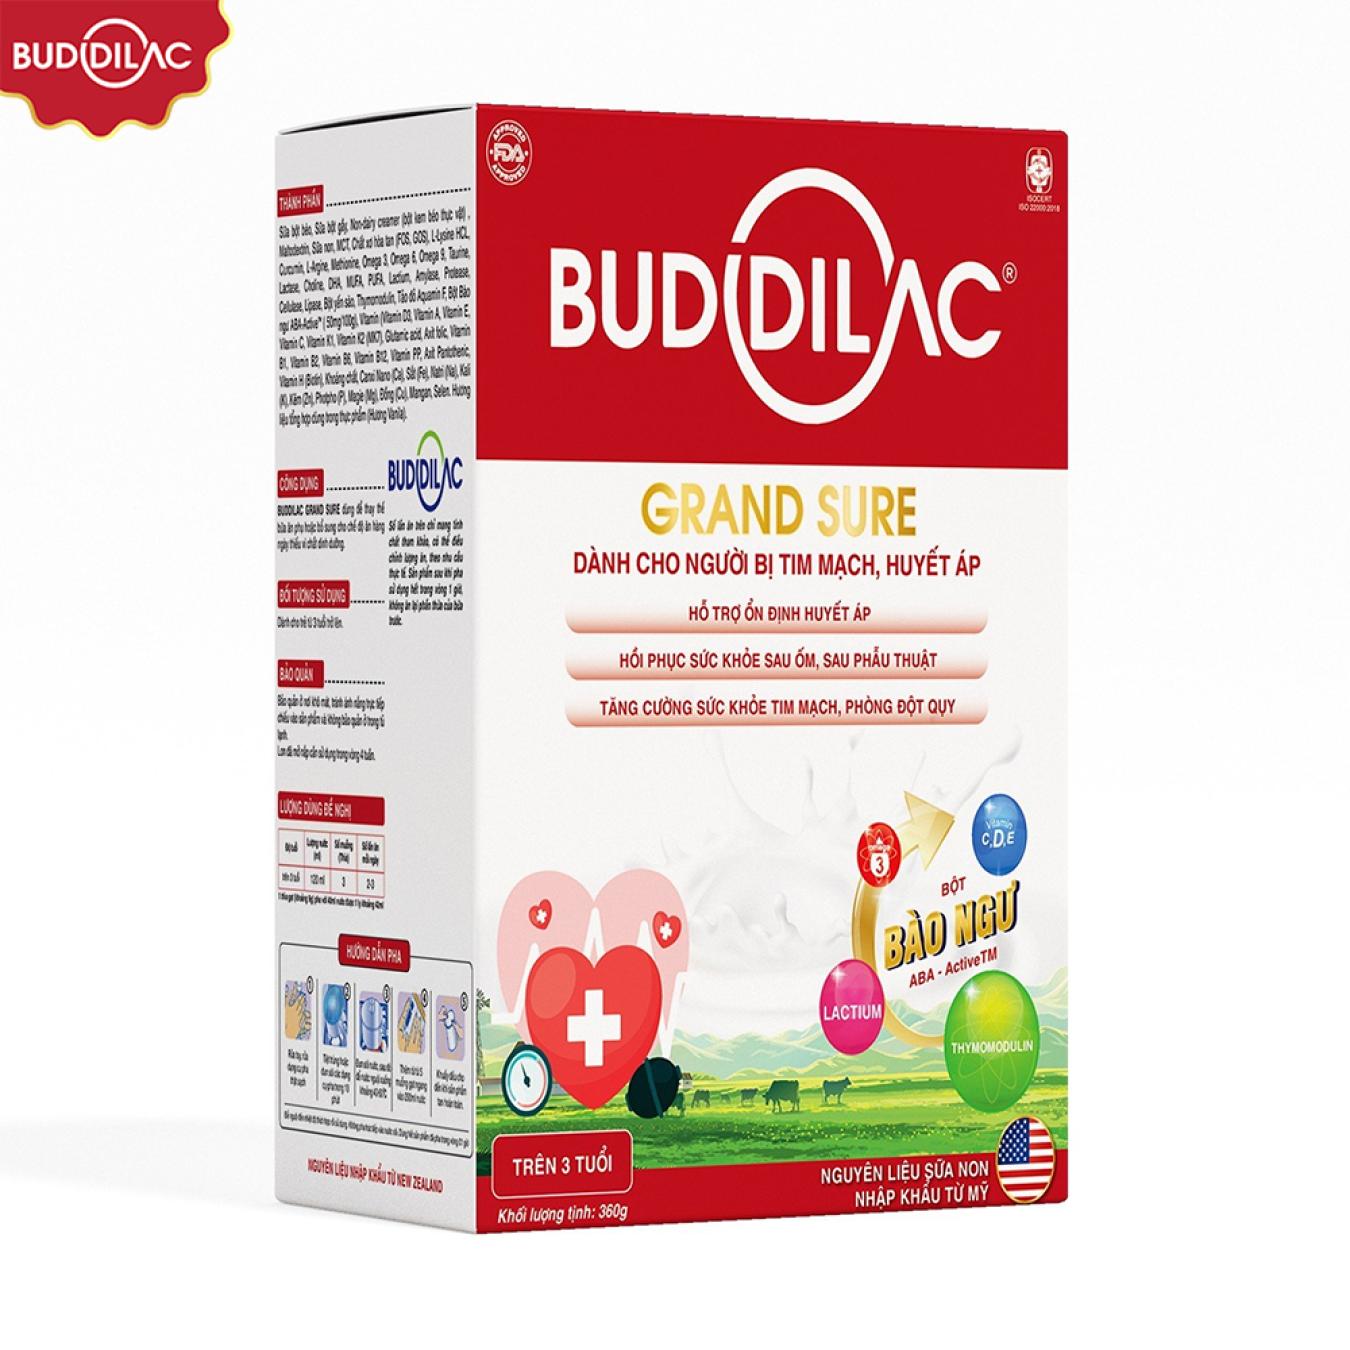 Sữa Buddilac Grand Sure dạng hộp gói - Dành cho người bị tim mạch, huyết áp